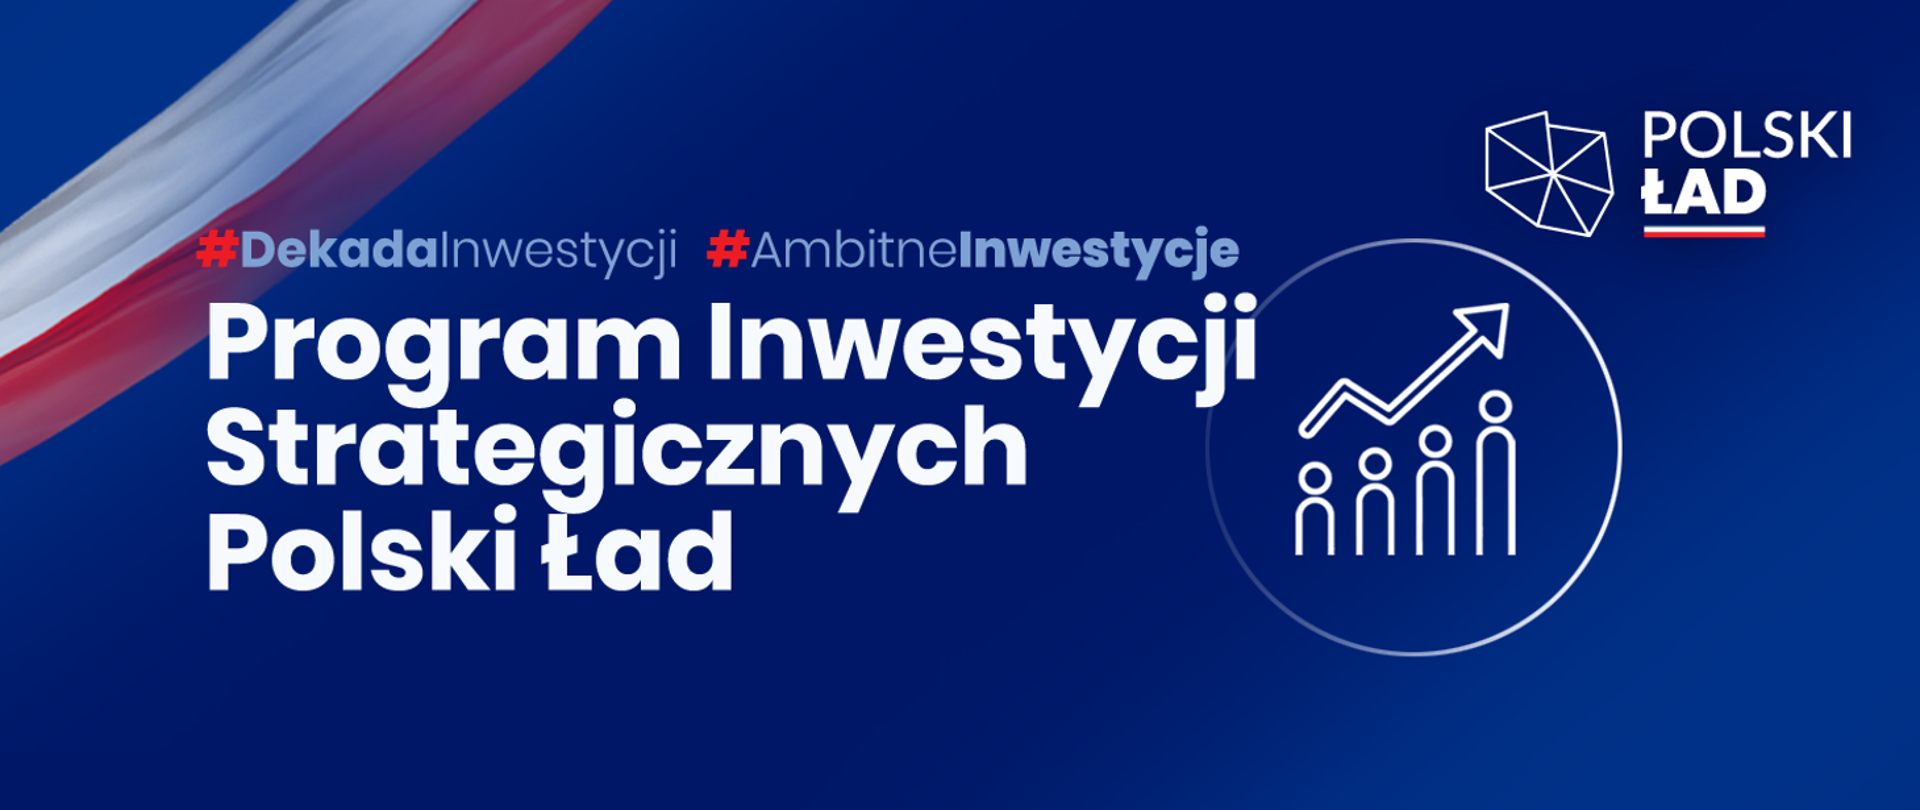 Program Inwestycji Strategicznych Polski Ład, obok logo projektu